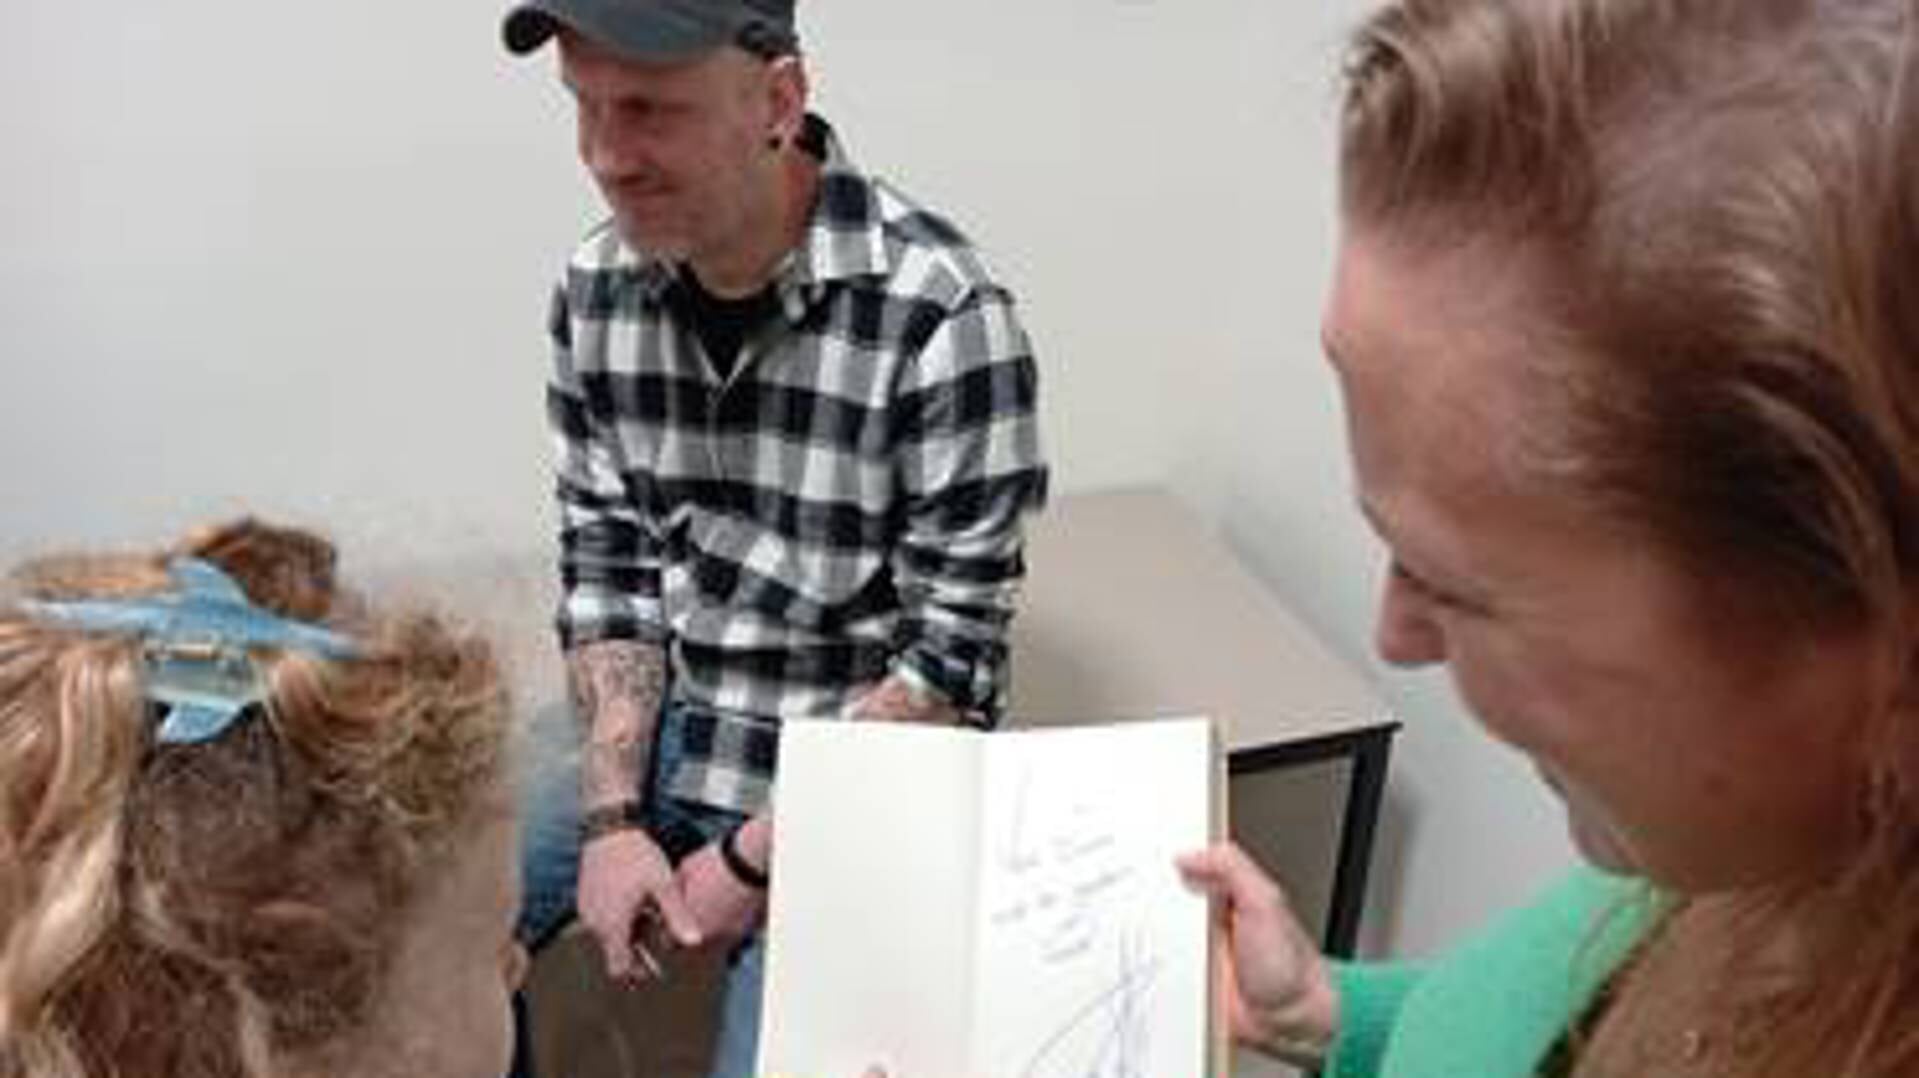 Leerlingen uit groep 5/6 kijken samen met de leerkracht naar de handtekening van Pieter Koolwijk in de kaft van het boek.